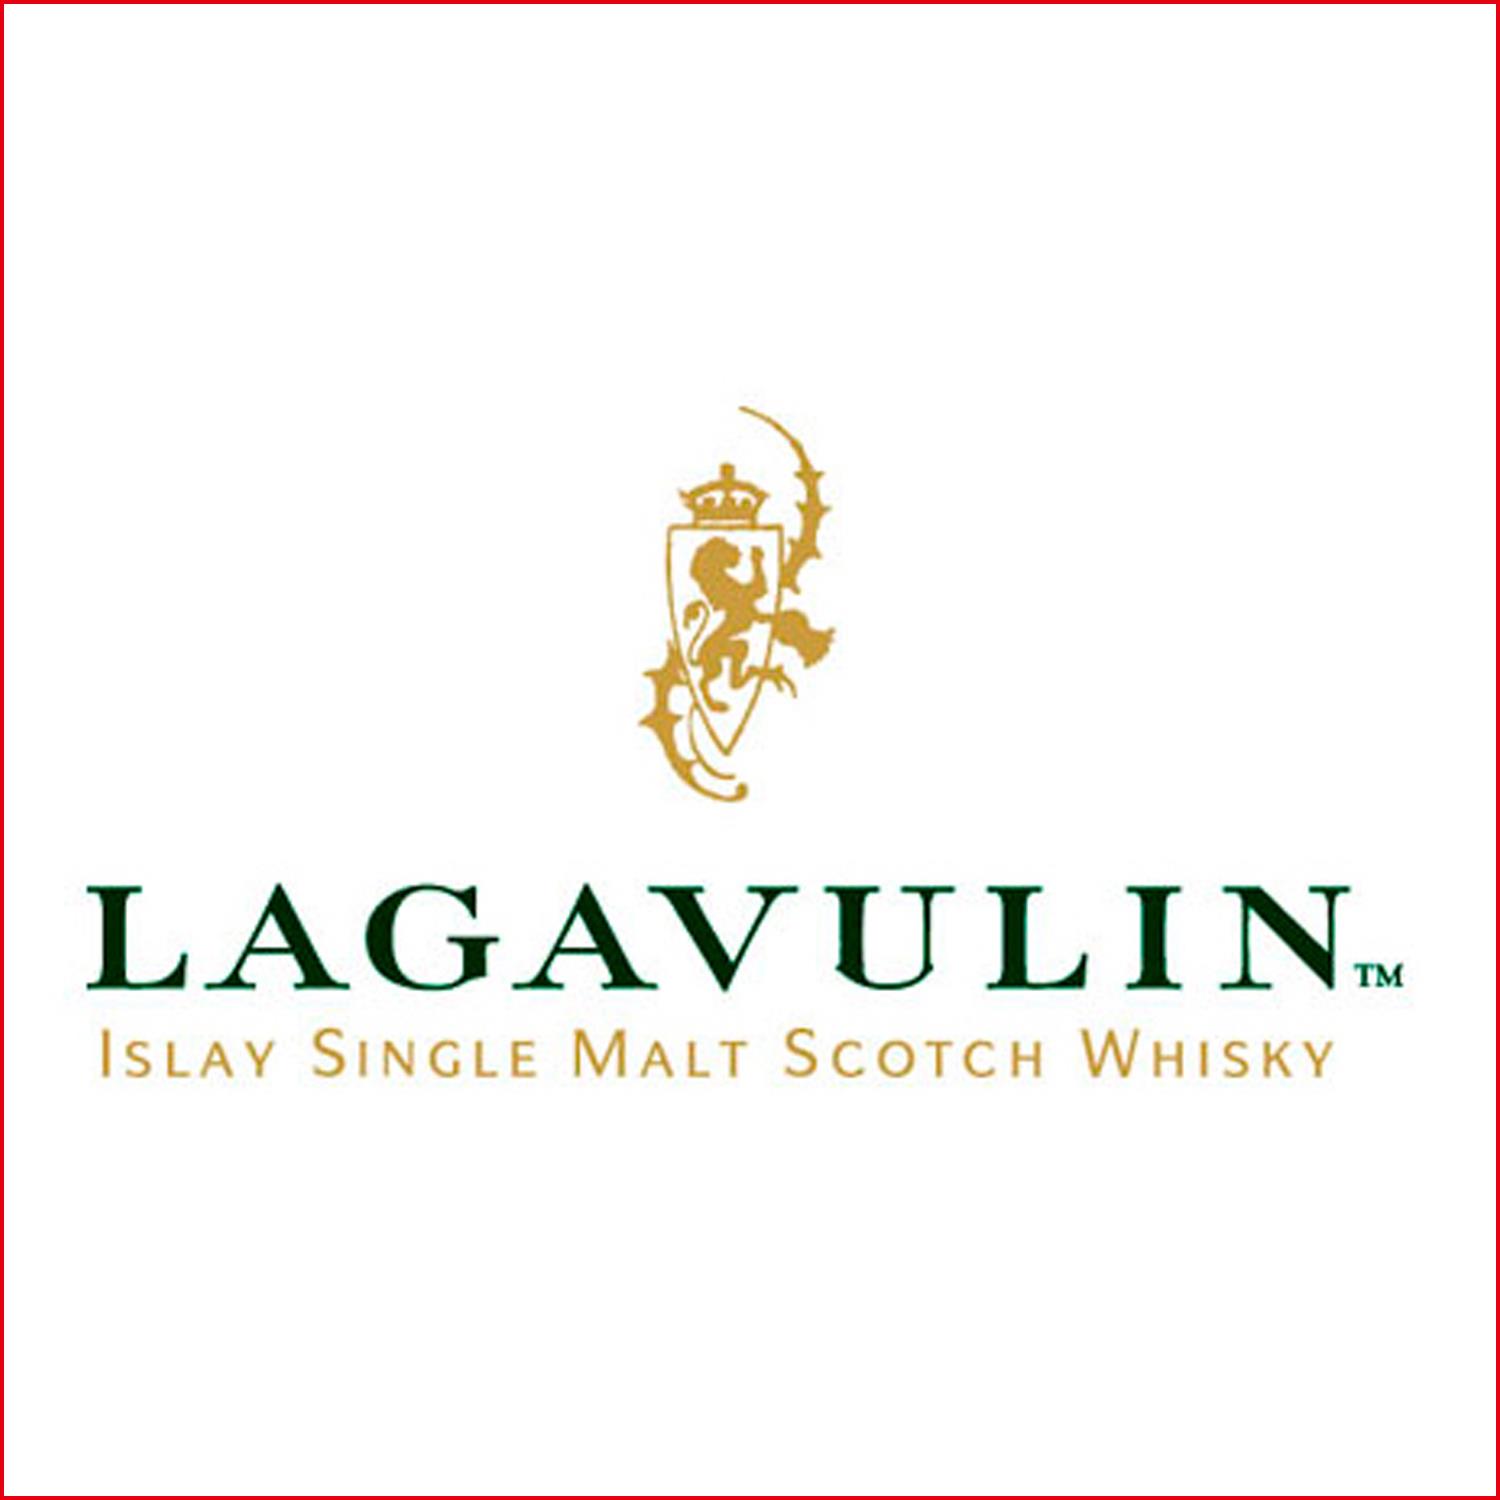 樂加維林 Lagavulin